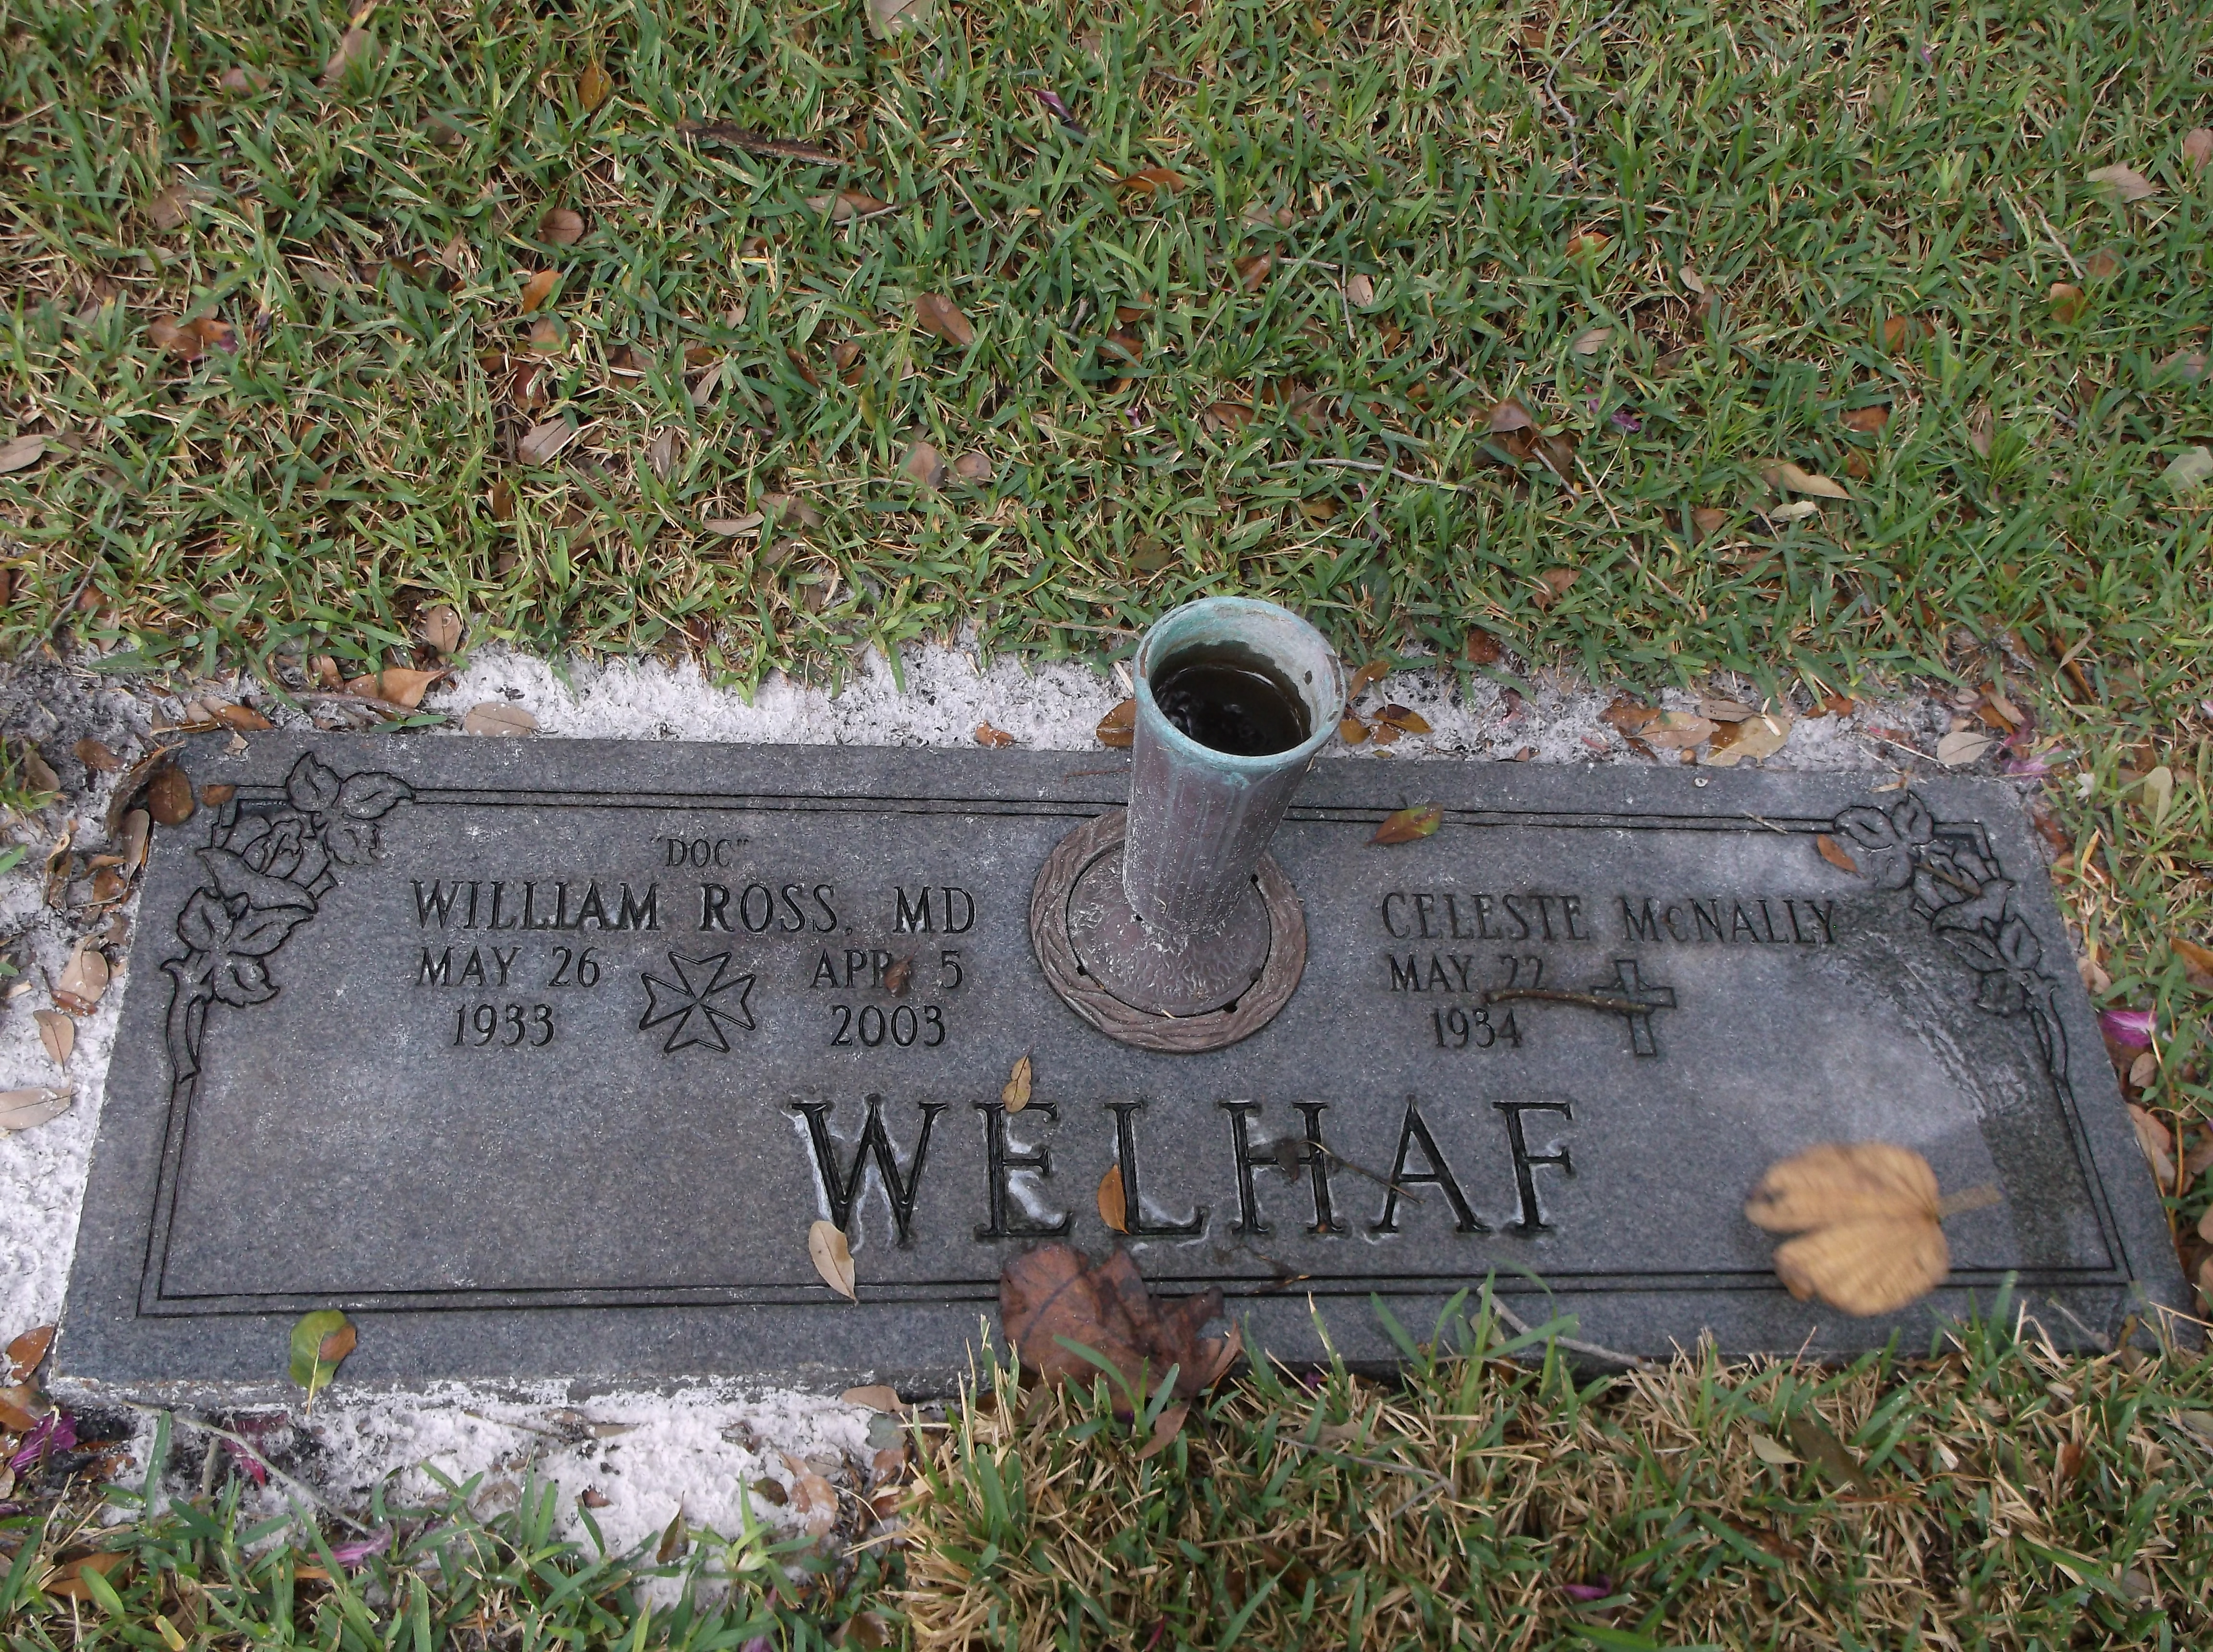 William Ross "Doc" Welhaf